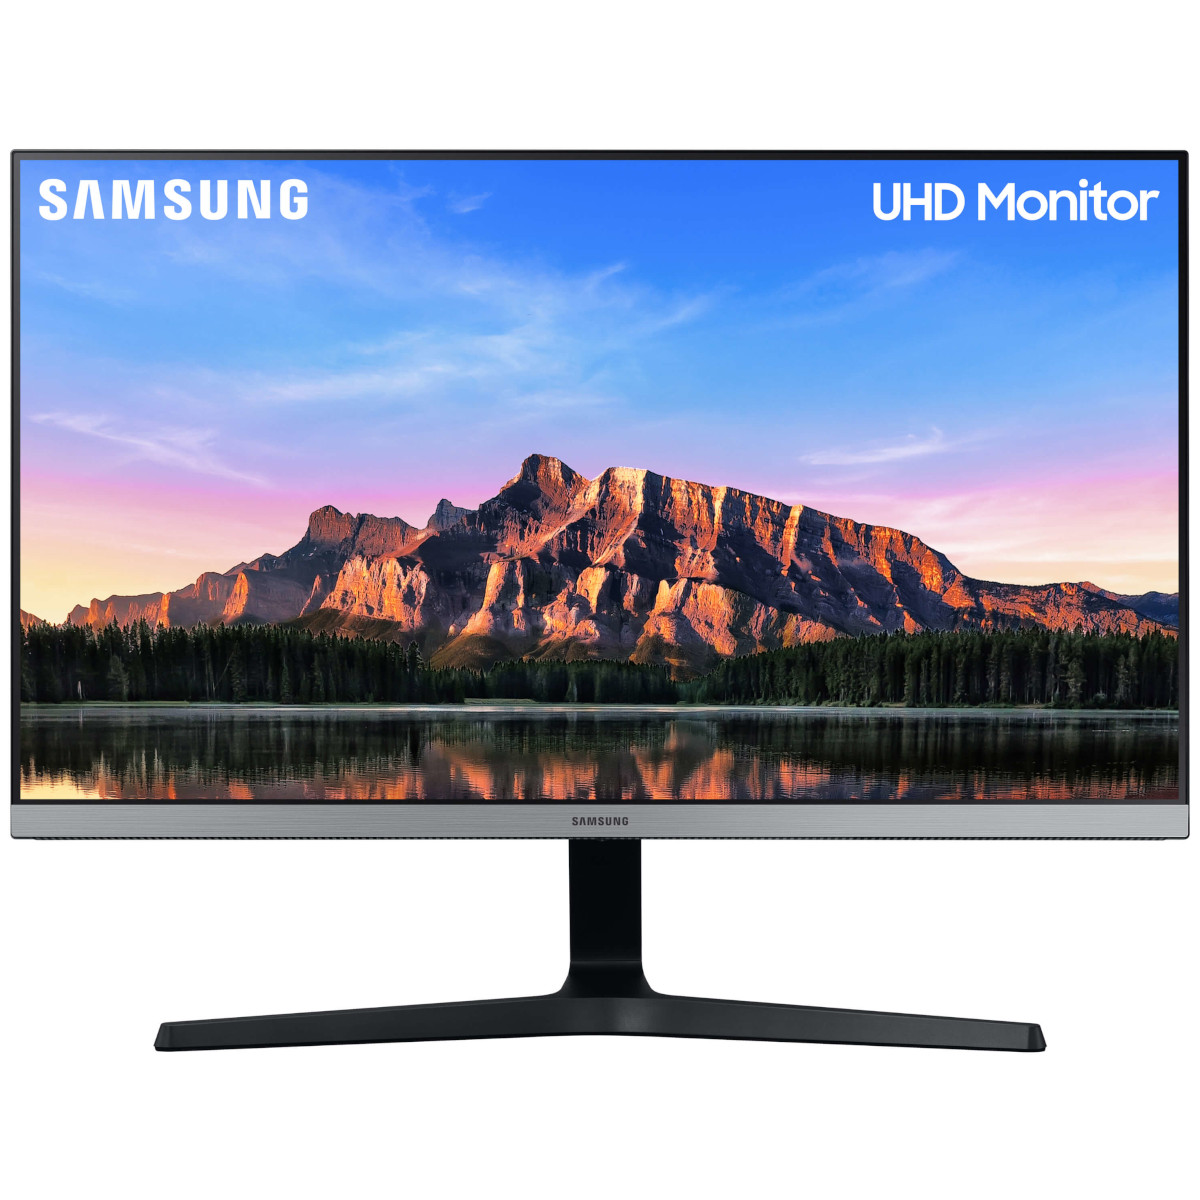 Monitor Samsung Uhd 28 4k, Hdmi, Display ...